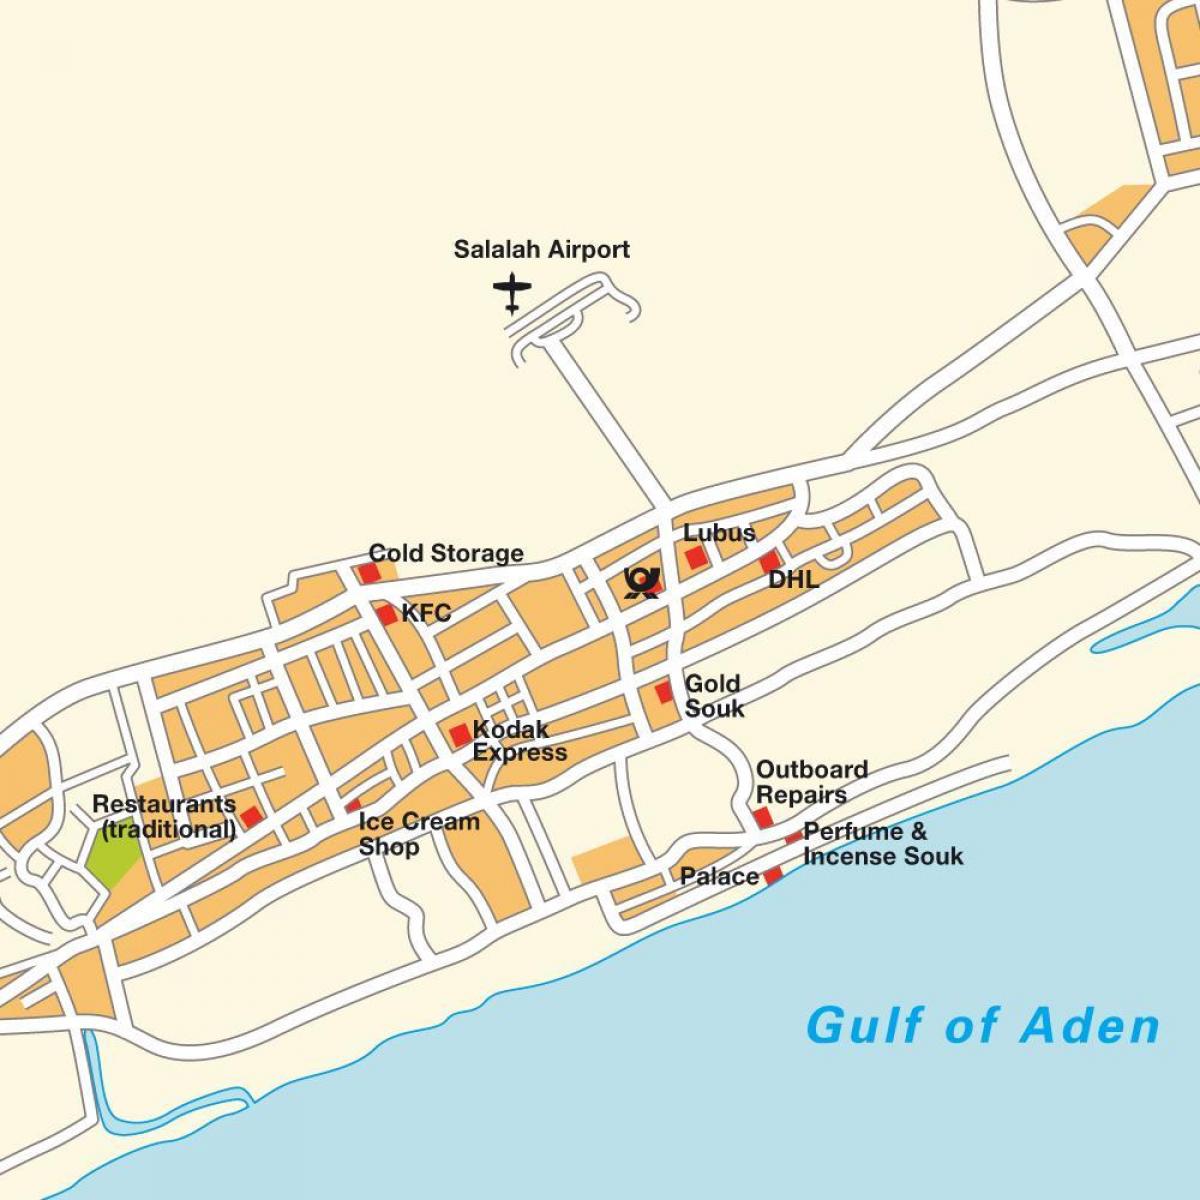 térkép Omán, salalah